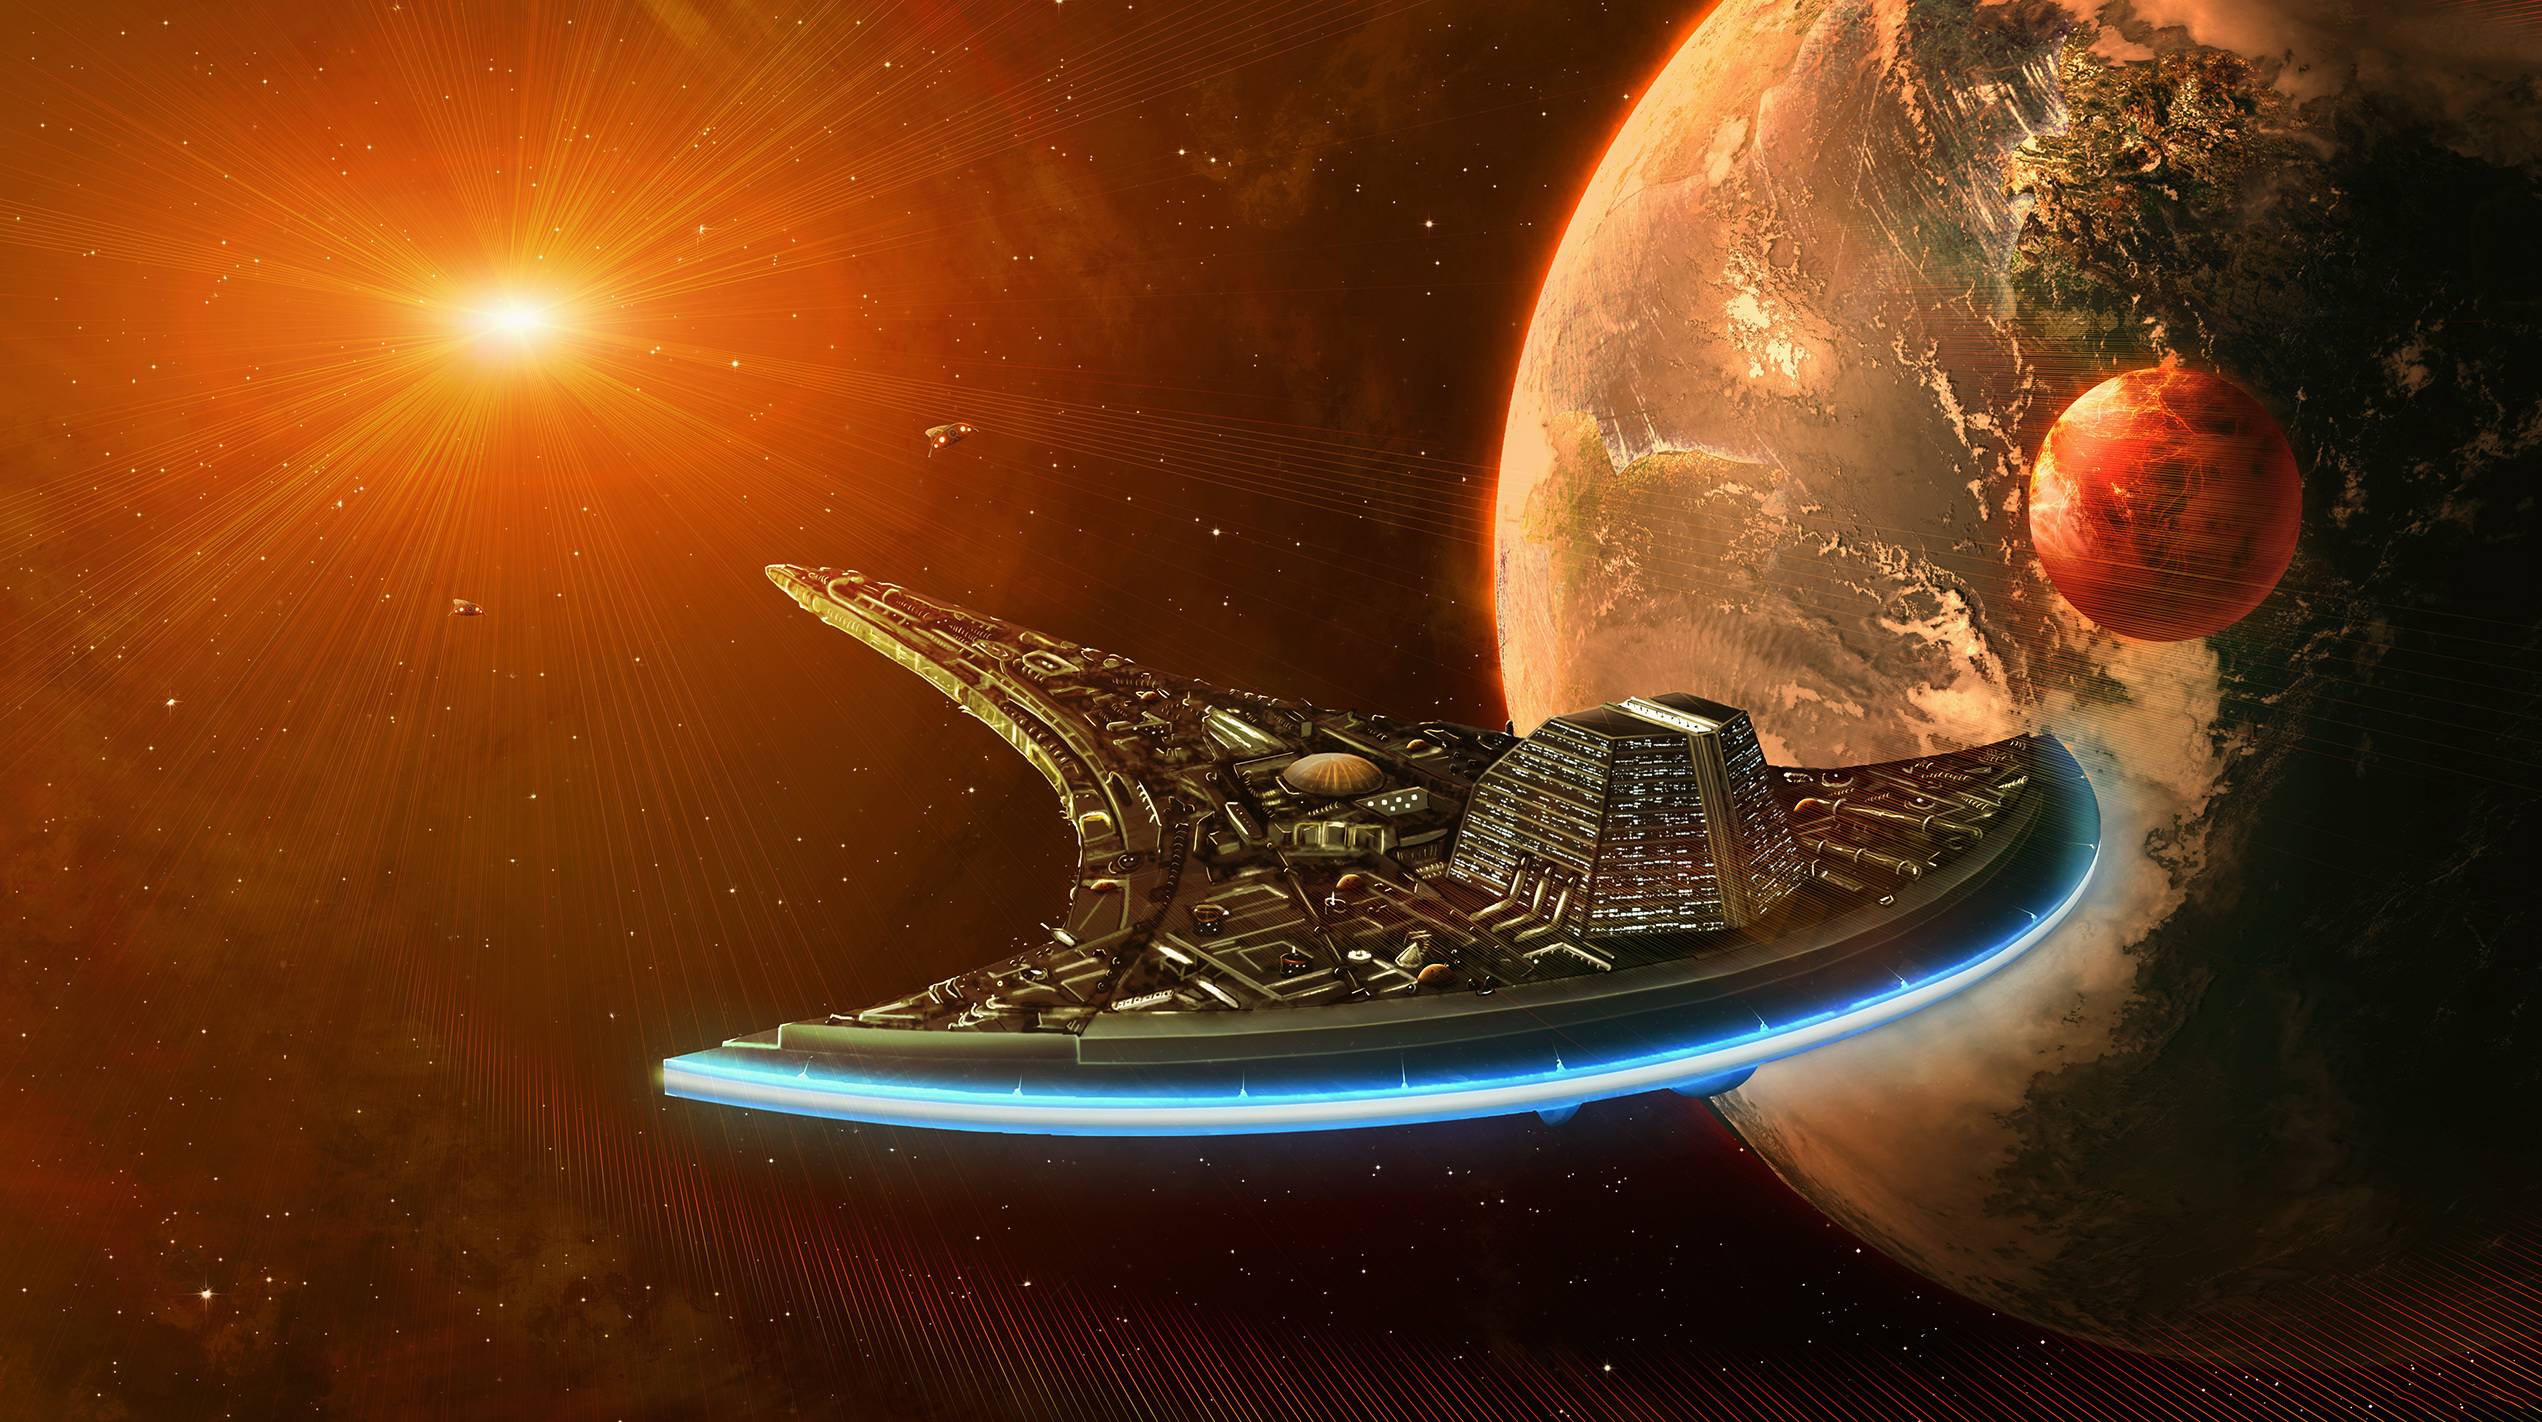 Обои космос корабль Вавилон-5 space ship Babylon 5 картинки на рабочий стол на тему Космос - скачать бесплатно